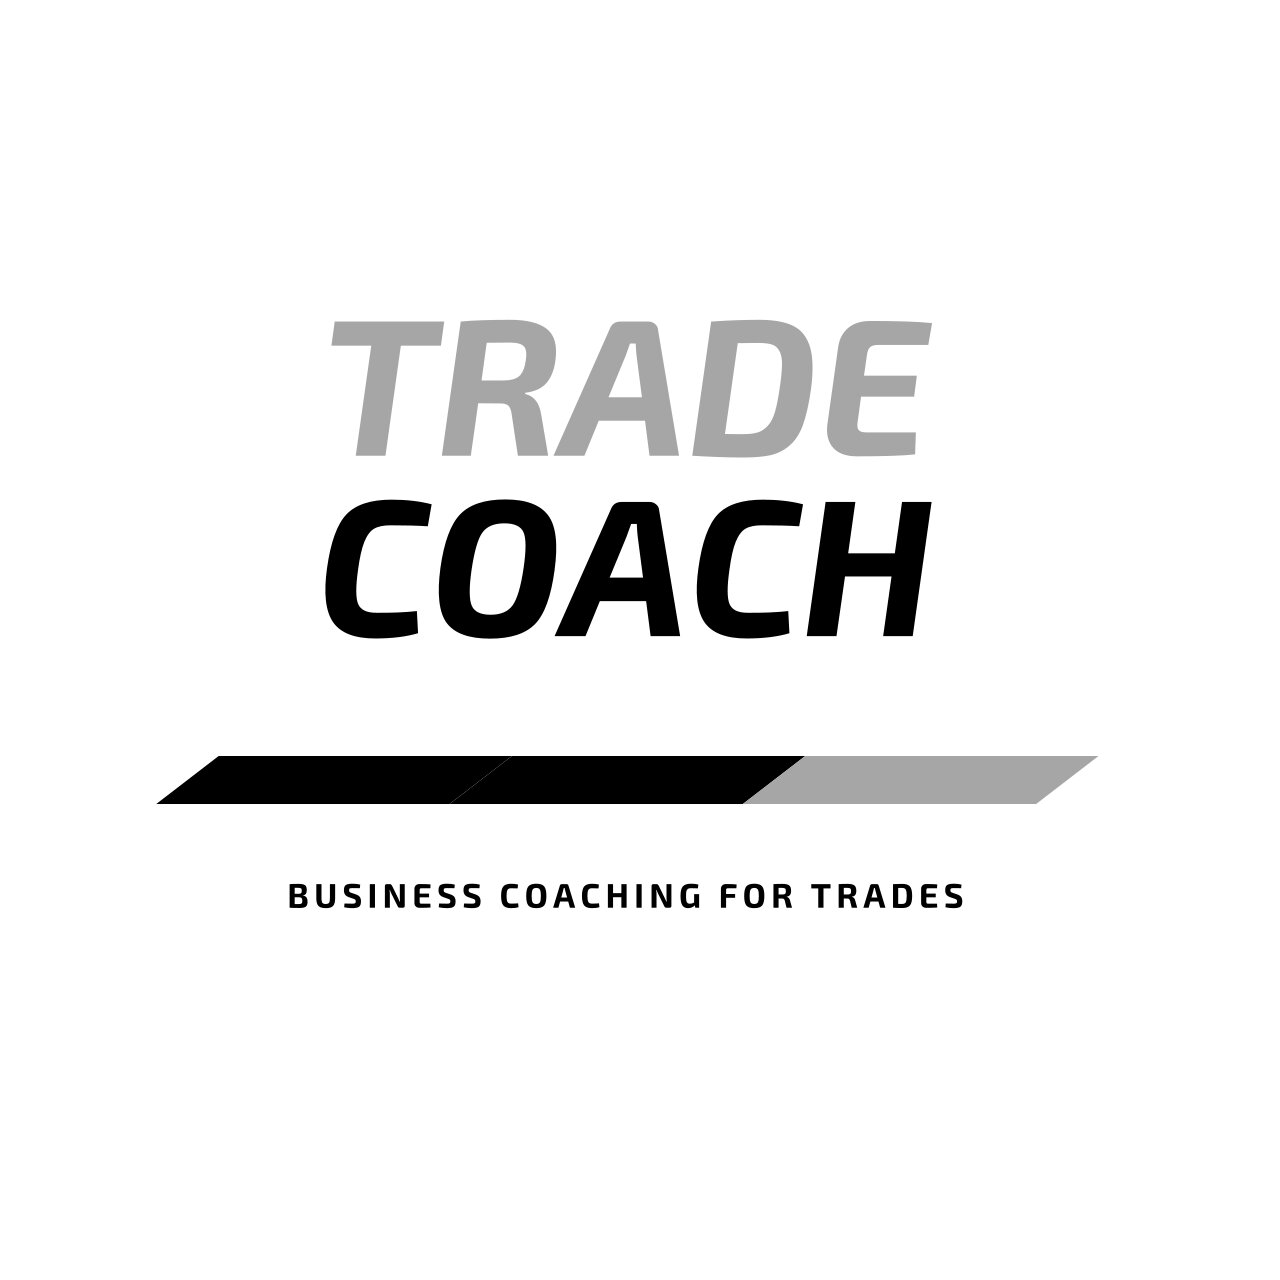 Trade Coach